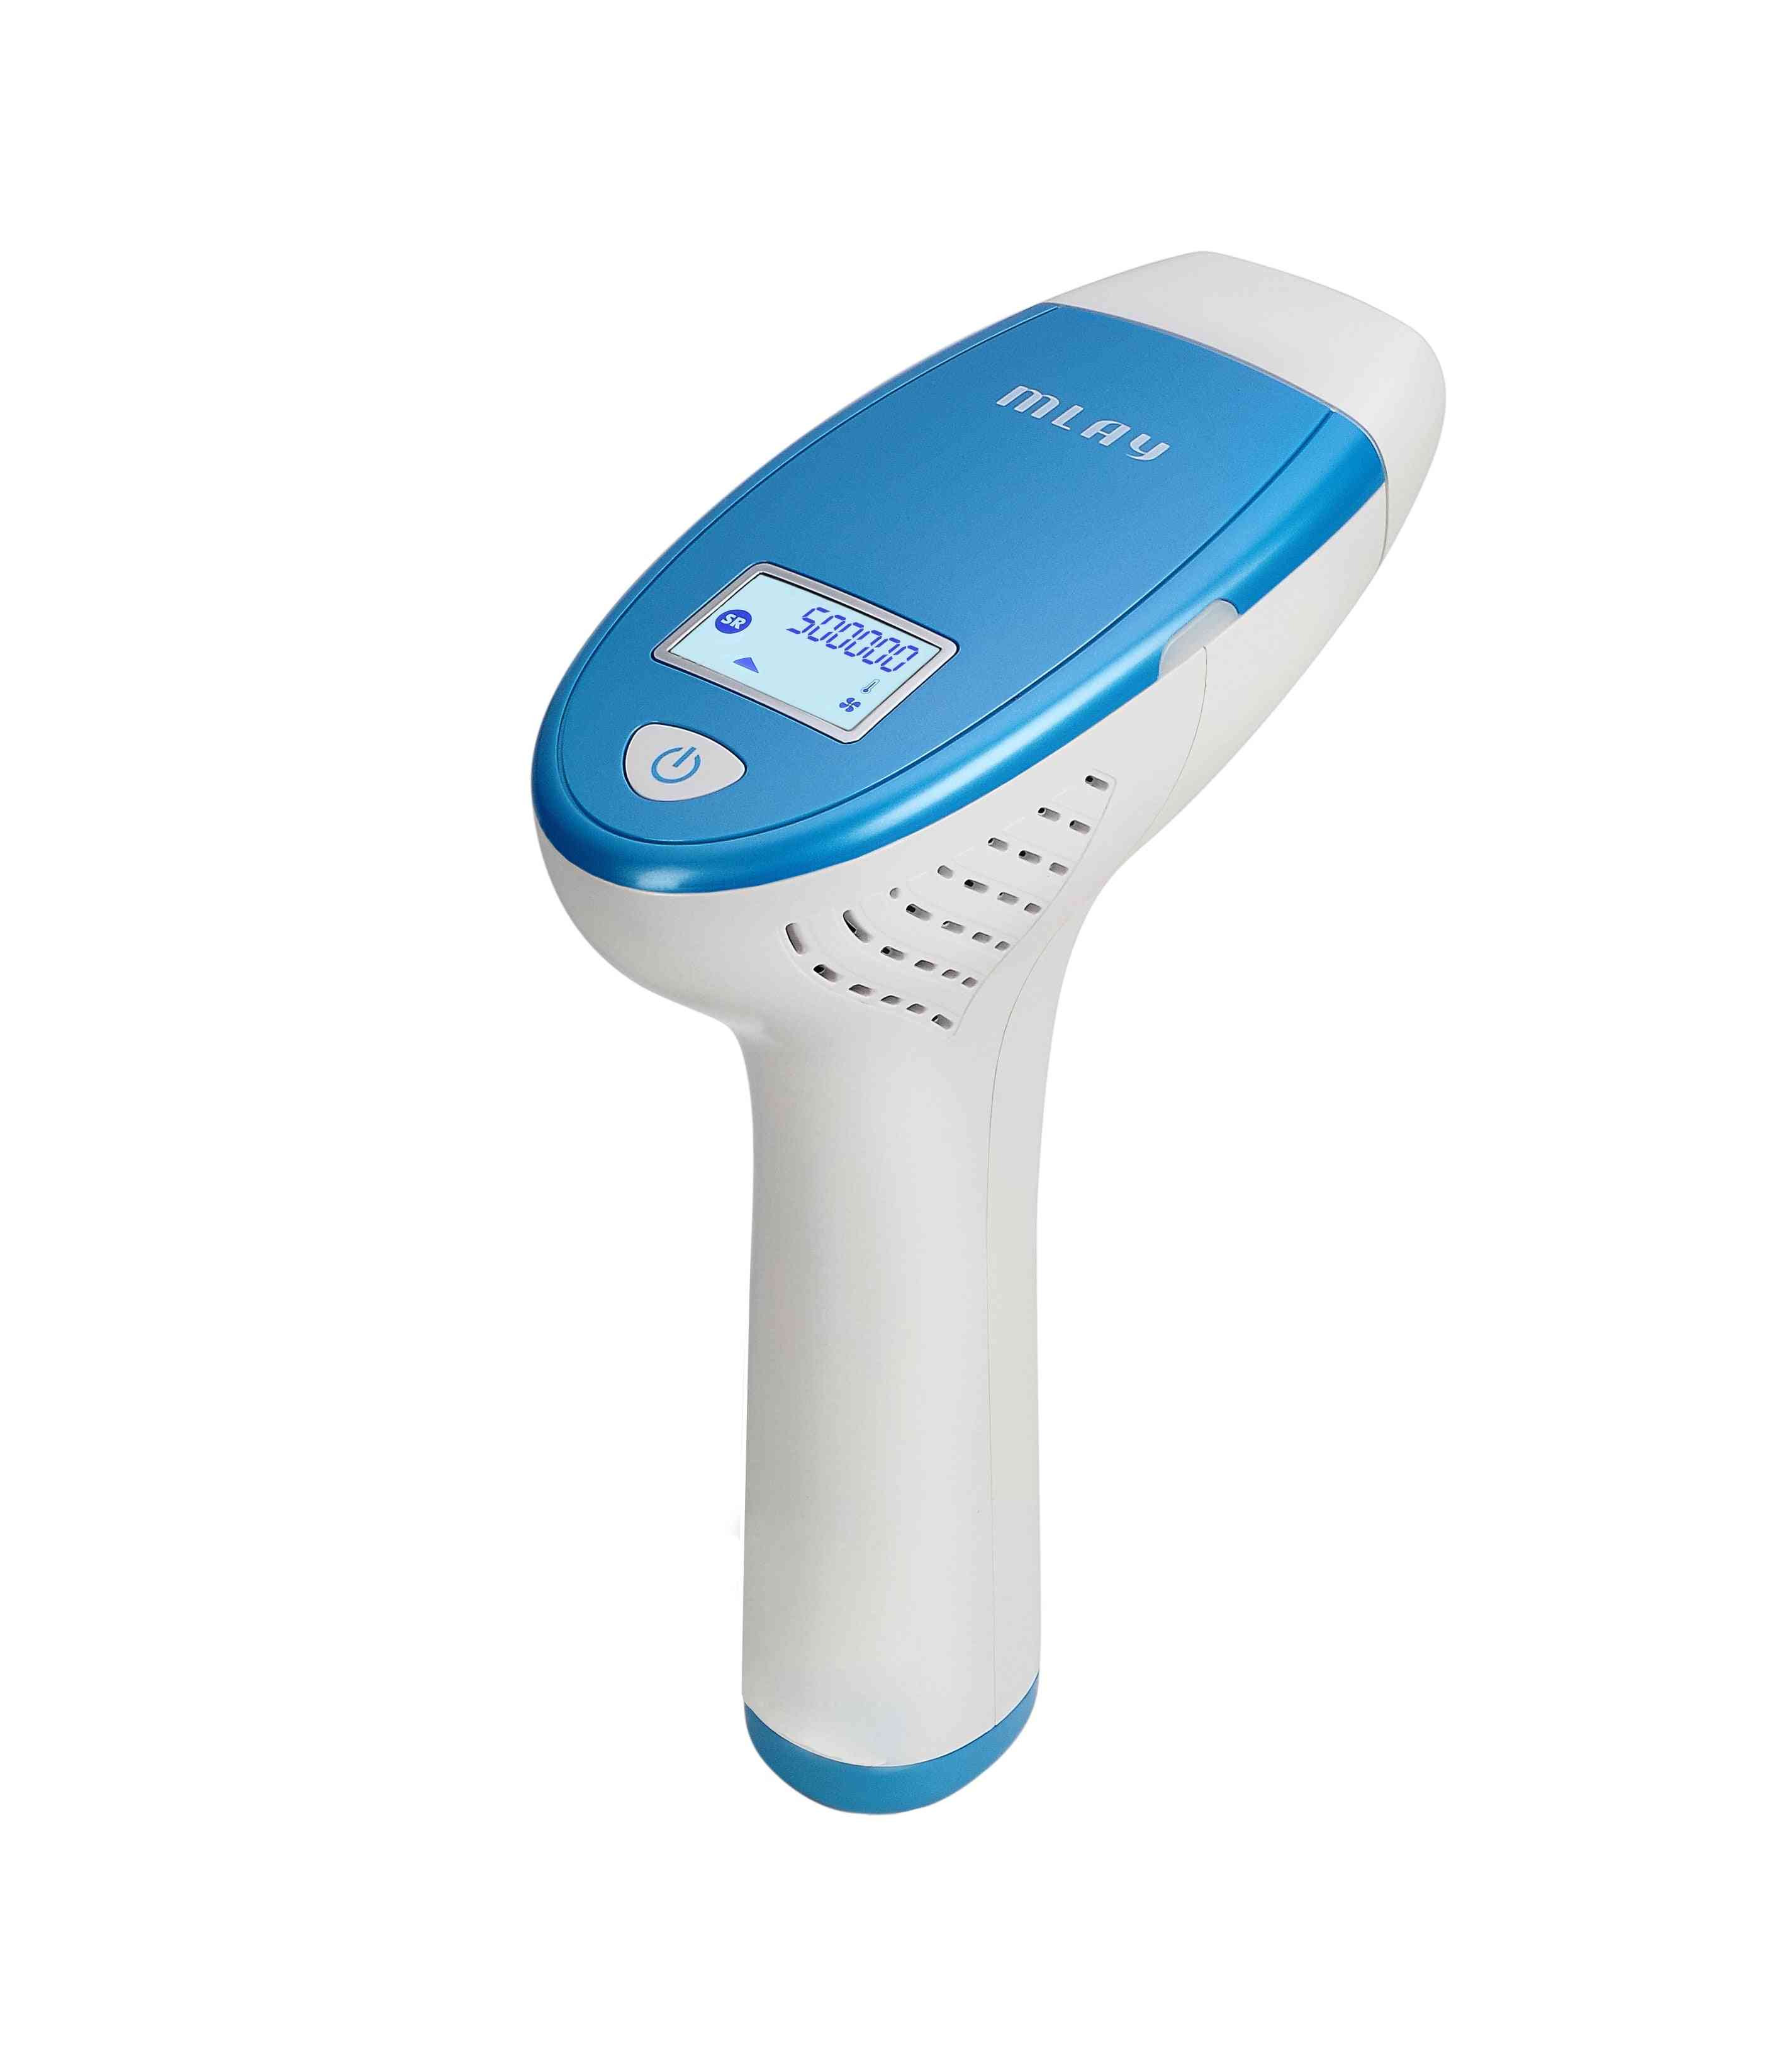 преносима домашна употреба подмладяване на кожата ipl лазерна машина за епилация с една лампа за епилация